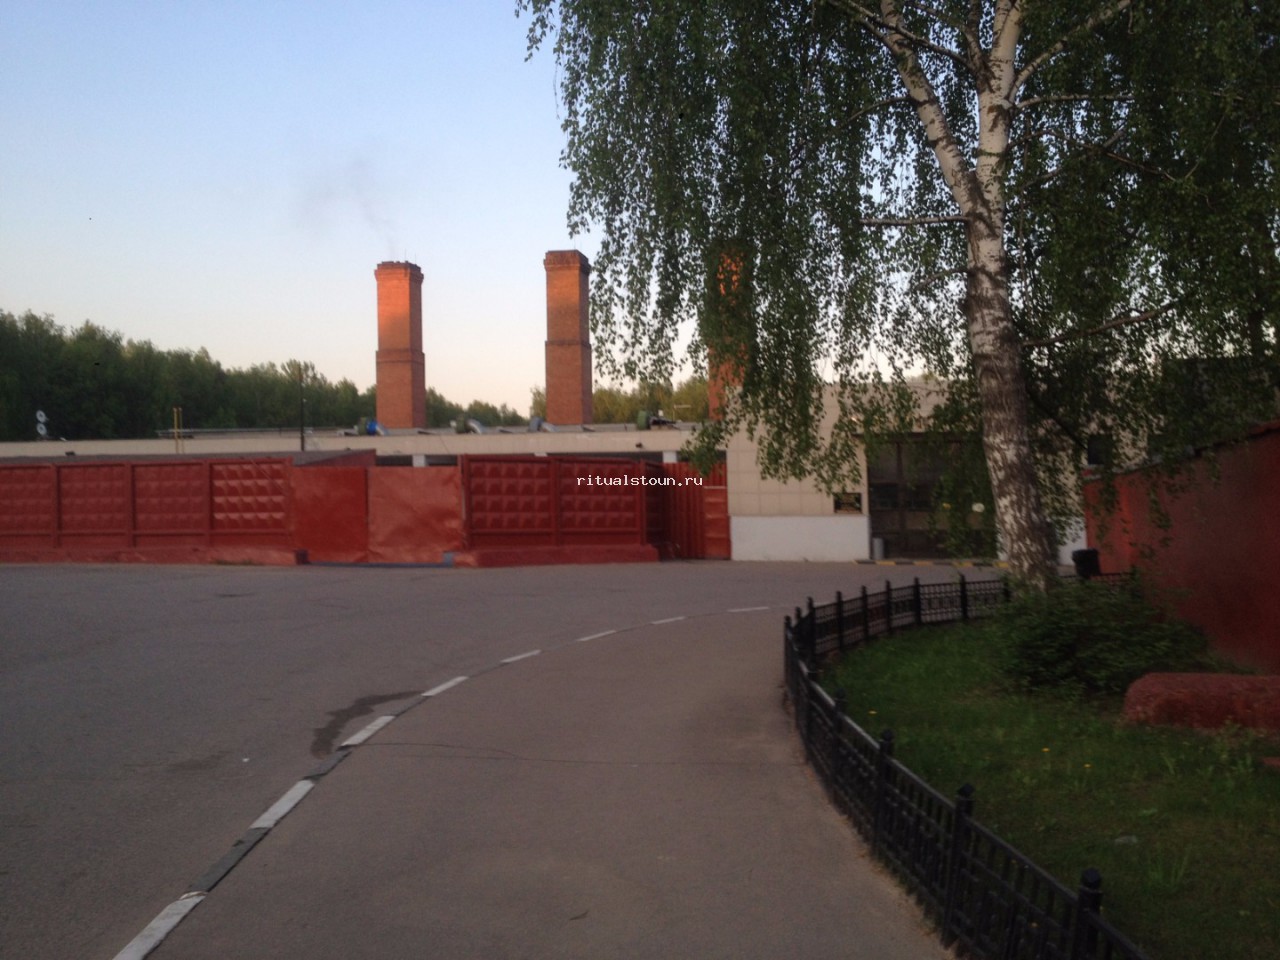 Архангельский крематорий адрес